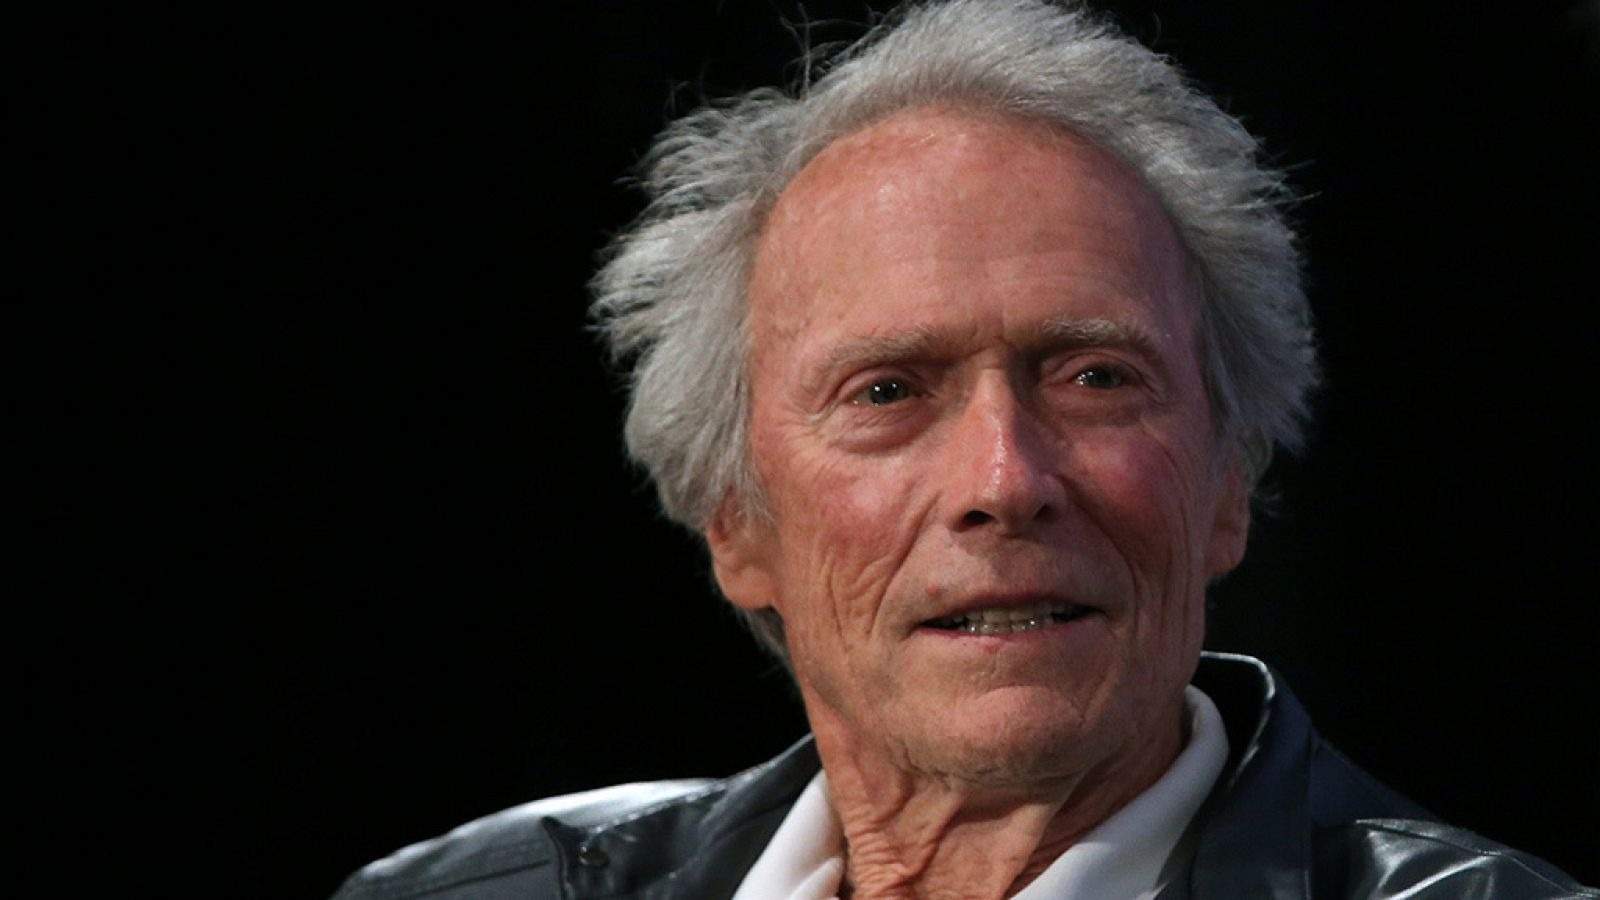 Clint Eastwood és a prop dels 94 anys i a plena forma, aquest és el motiu